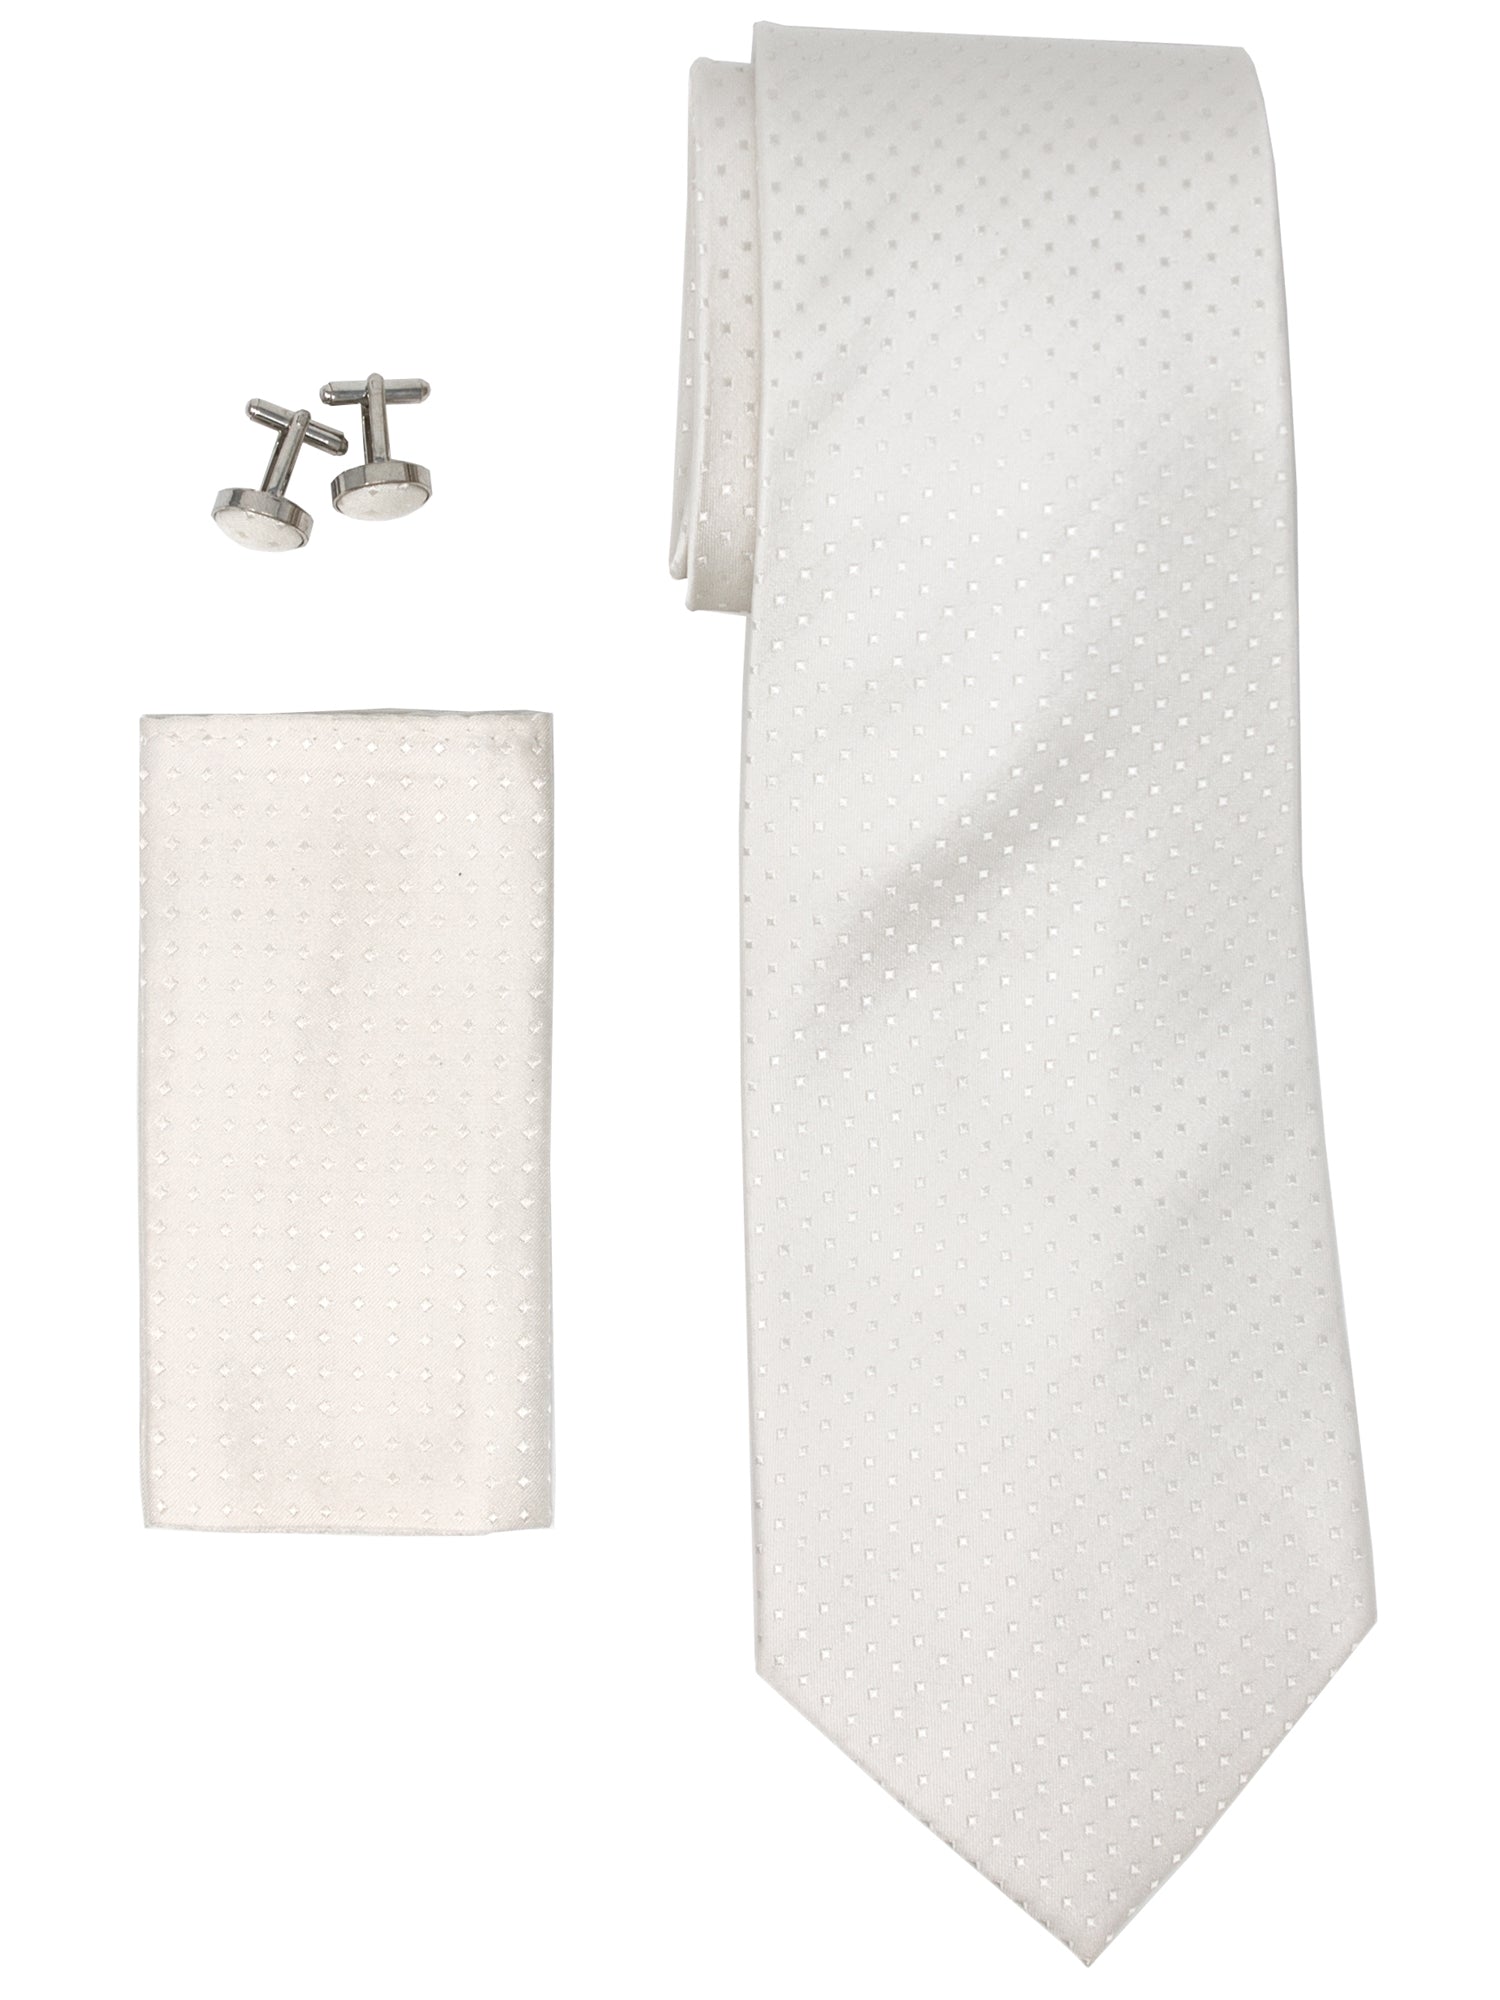 Men's Silk Neck Tie Set Cufflinks & Hanky Collection Neck Tie TheDapperTie Beige With Dots Regular 